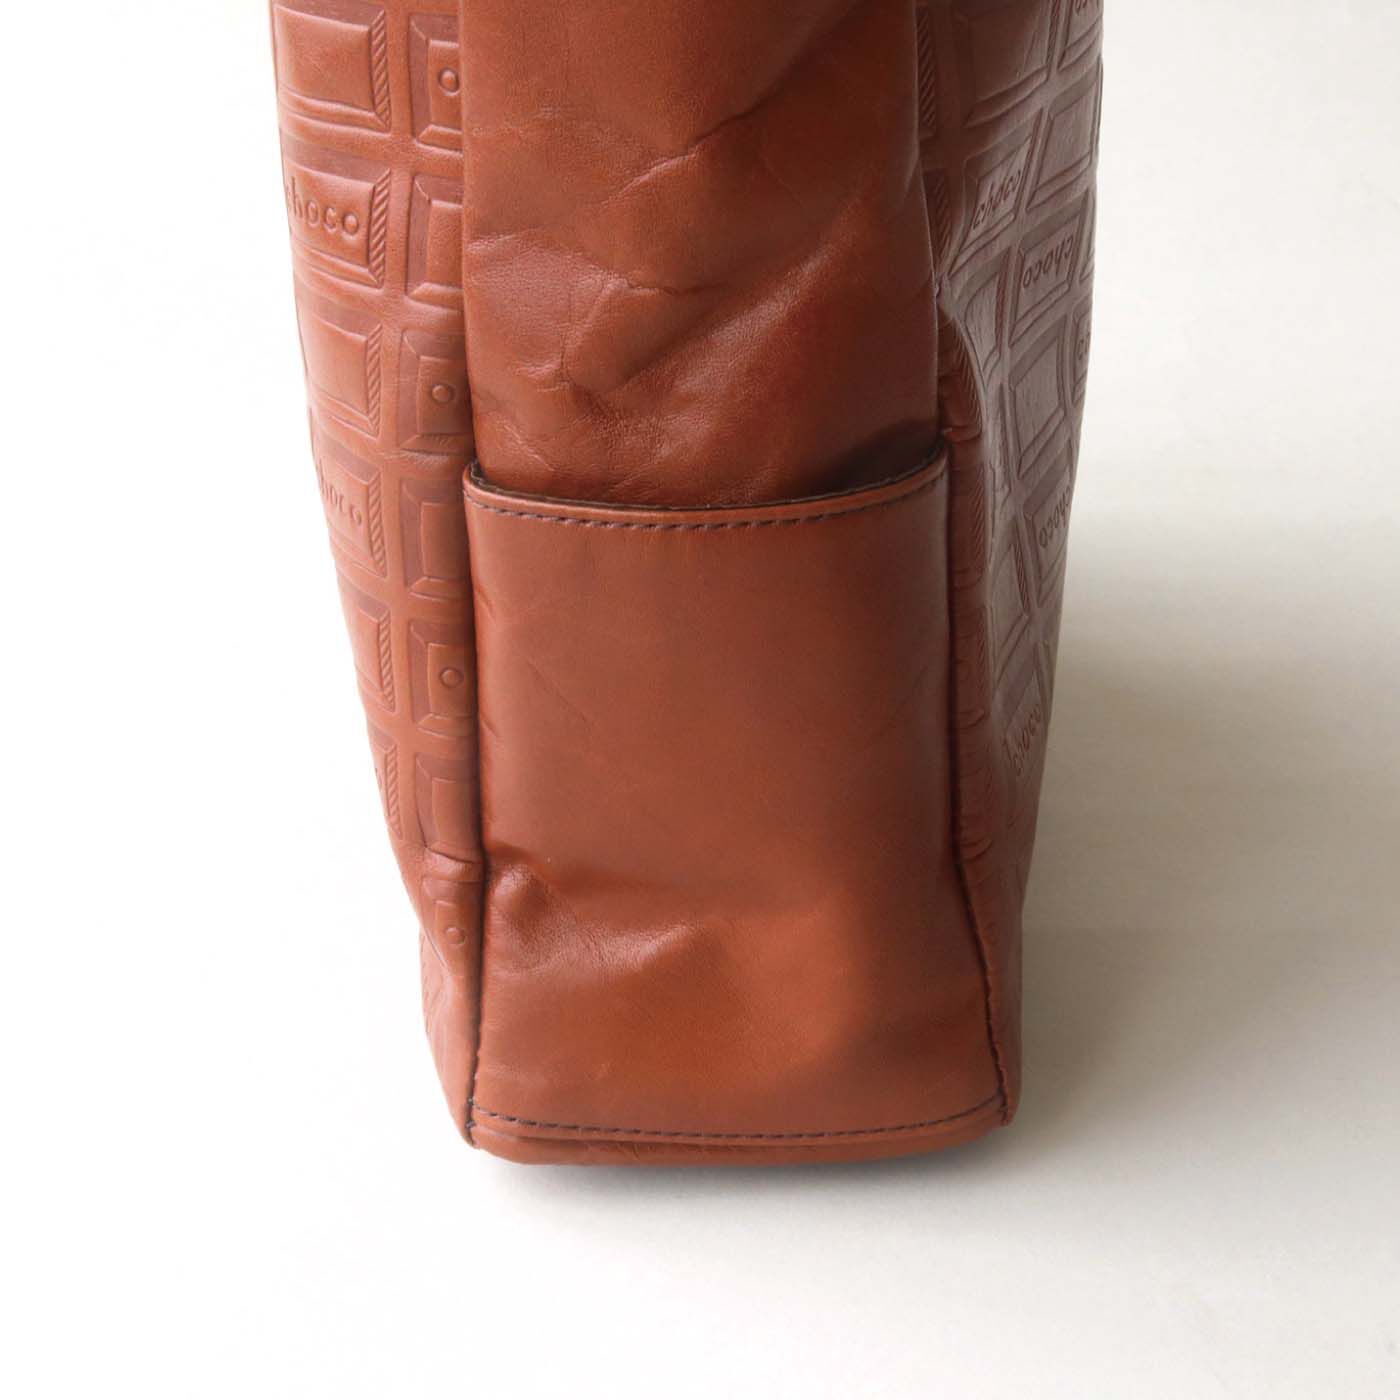 ＆Stories|チョコレートバイヤーと作った　職人本革のトートバッグ〈ブラウン〉|ちょっとしたものを入れるのに便利なポケット。